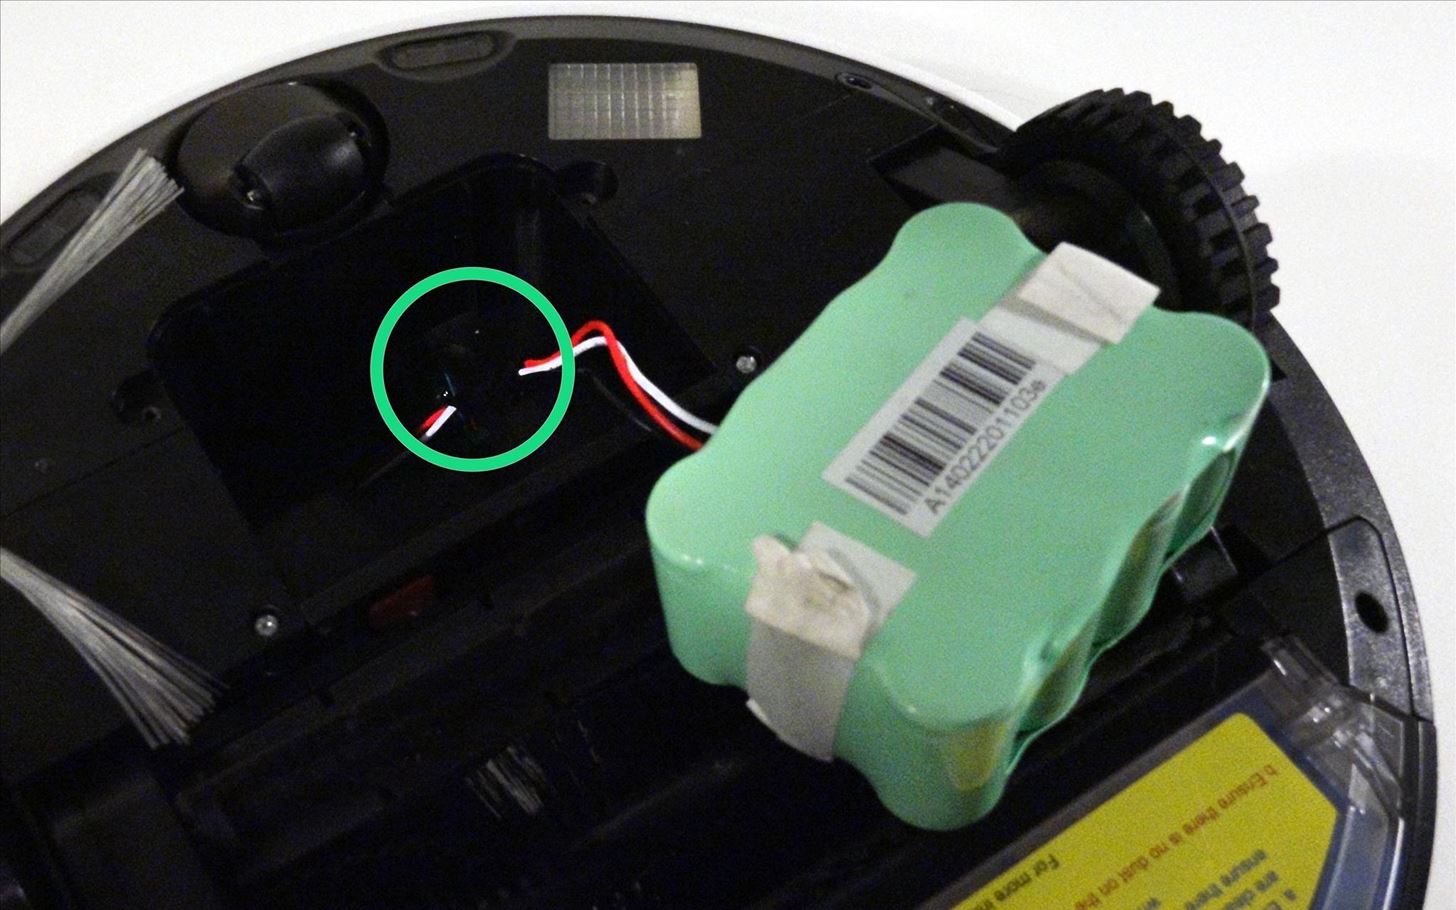 How to Install bObi's Battery